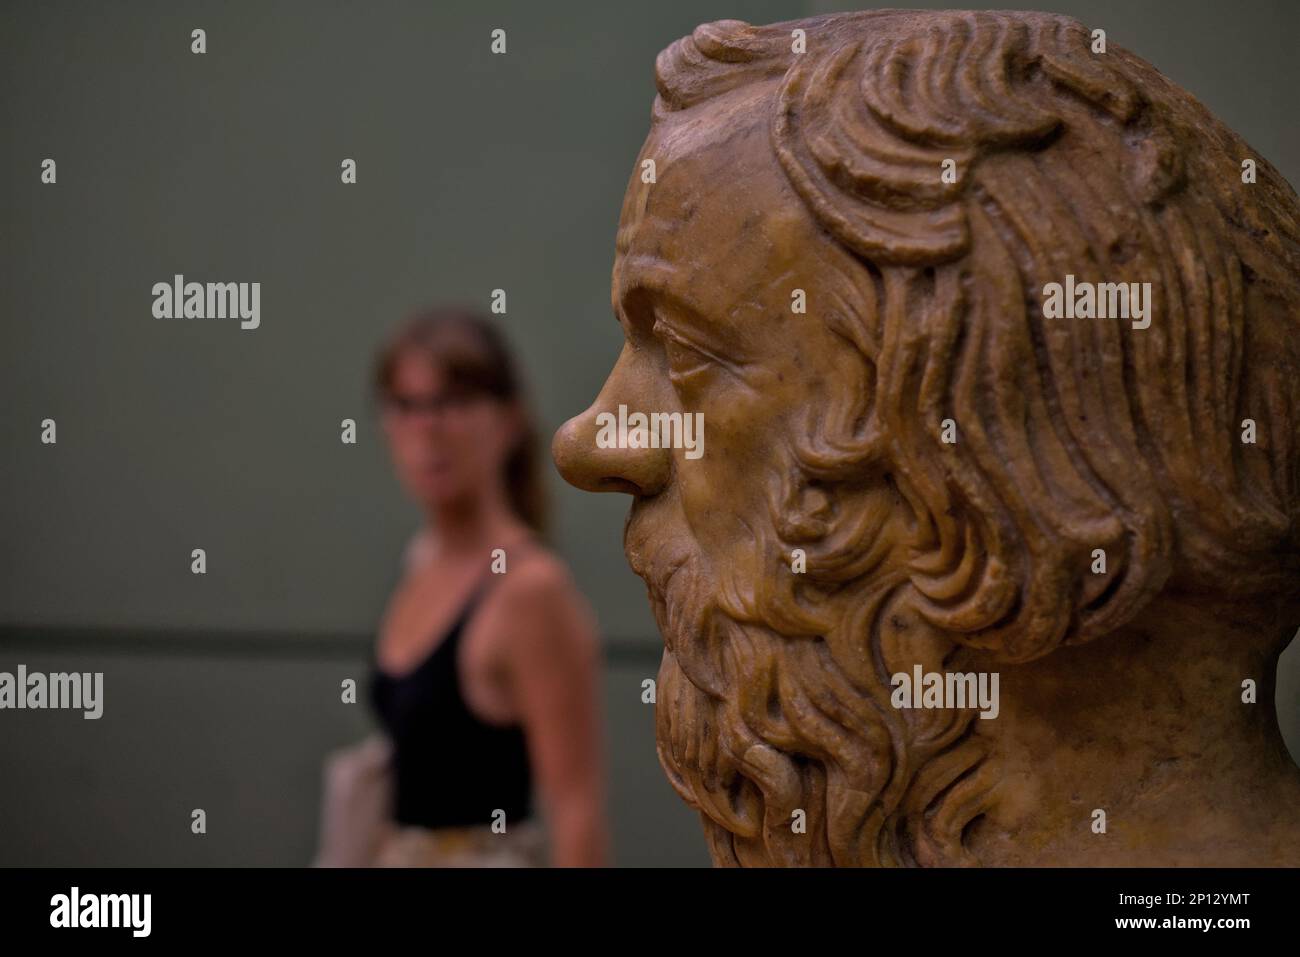 Femme inconnue regardant le profil d'un buste de Socrates à la gallerie degli Uffizi, Florence Italie Banque D'Images